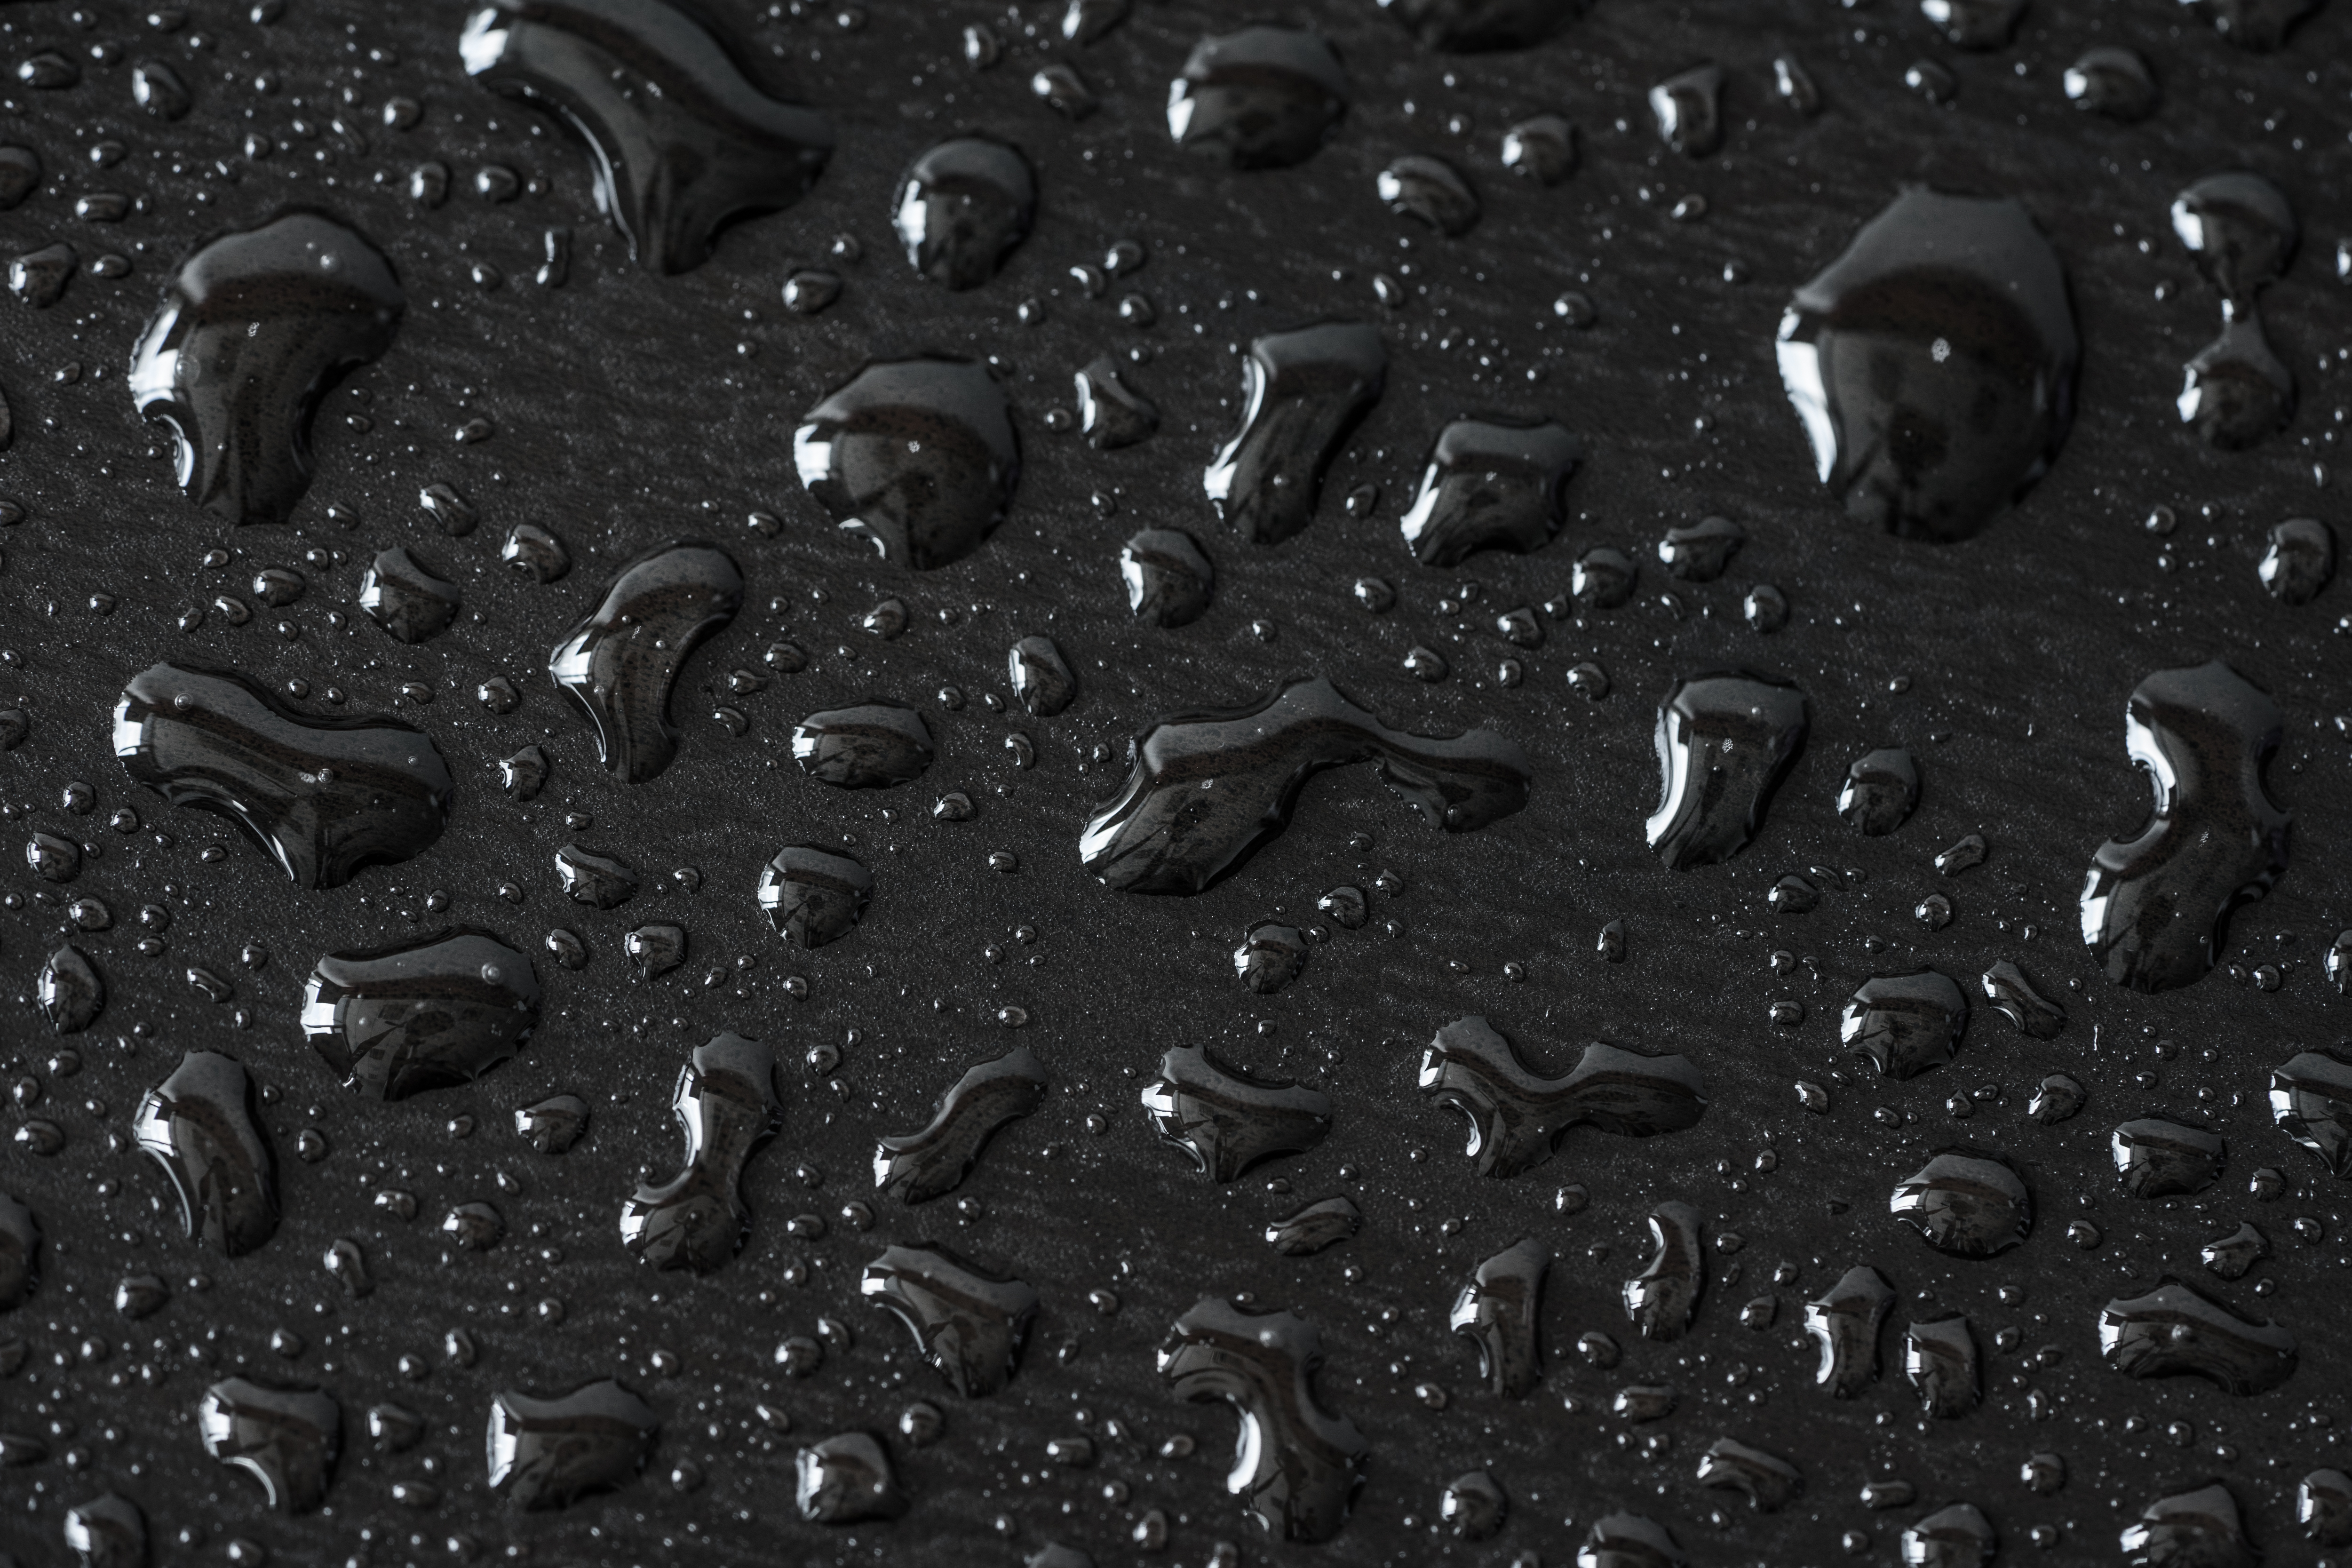 black liquid background